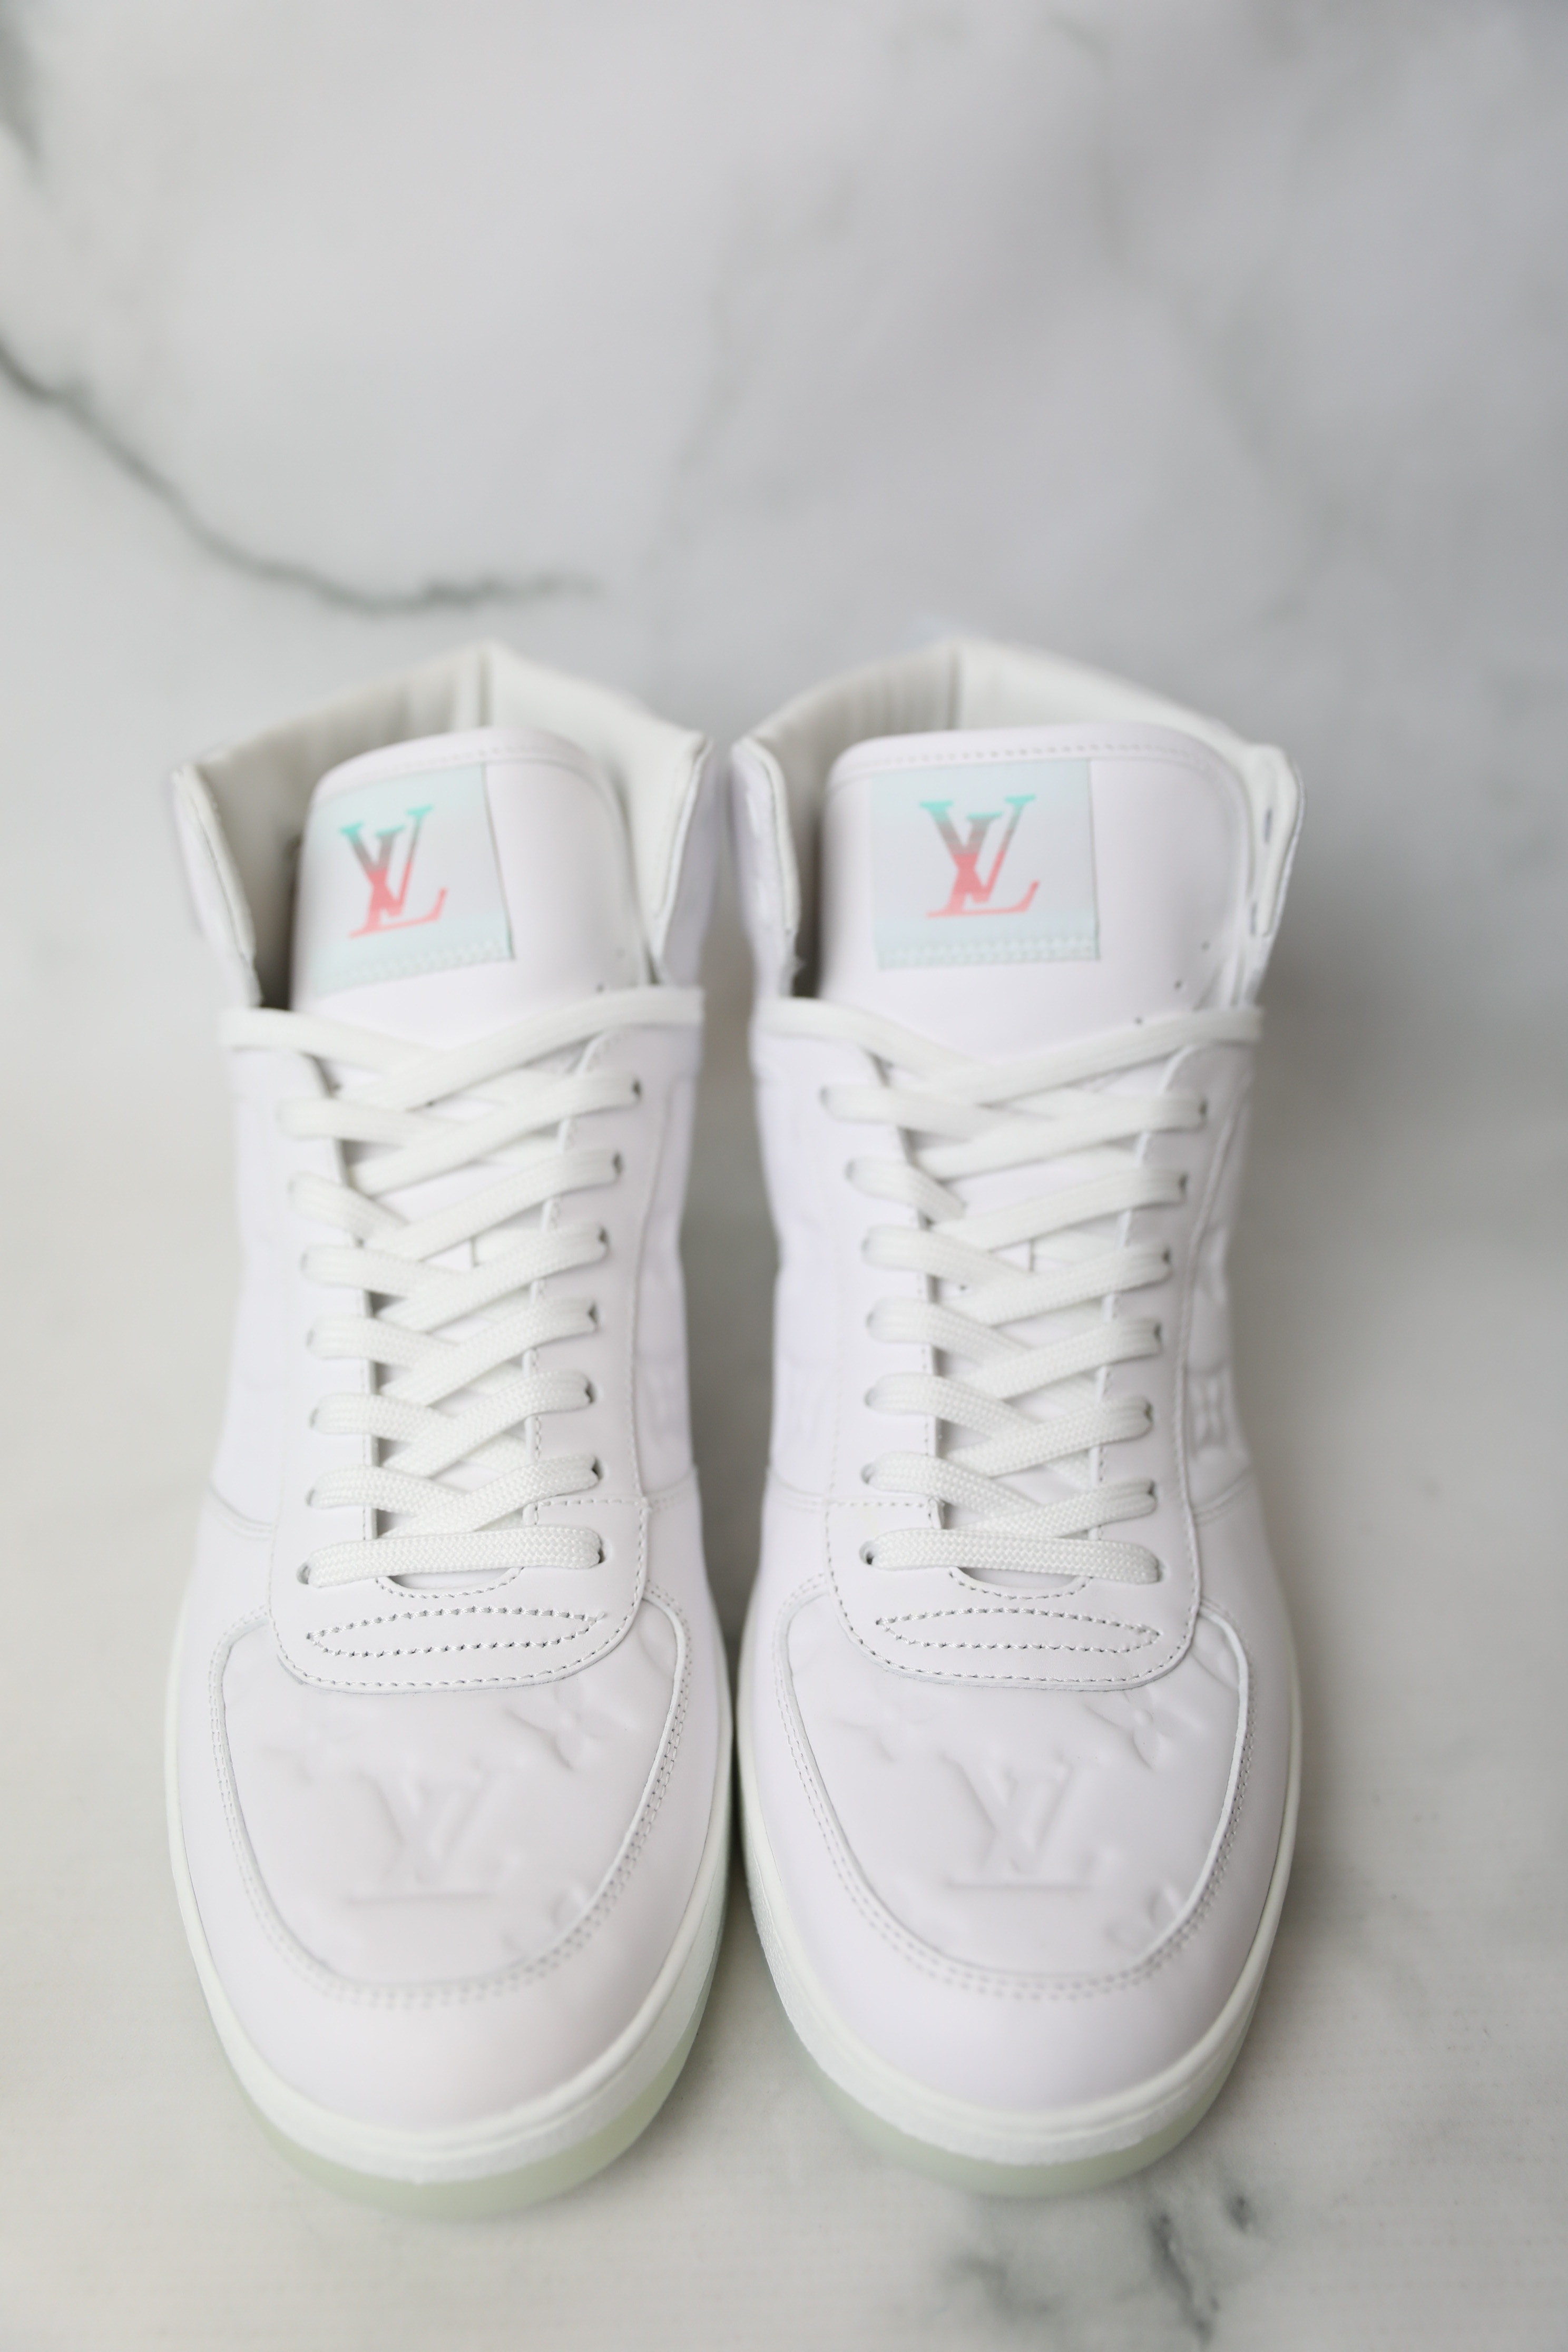 Louis Vuitton Rivoli Sneaker White. Size 06.0